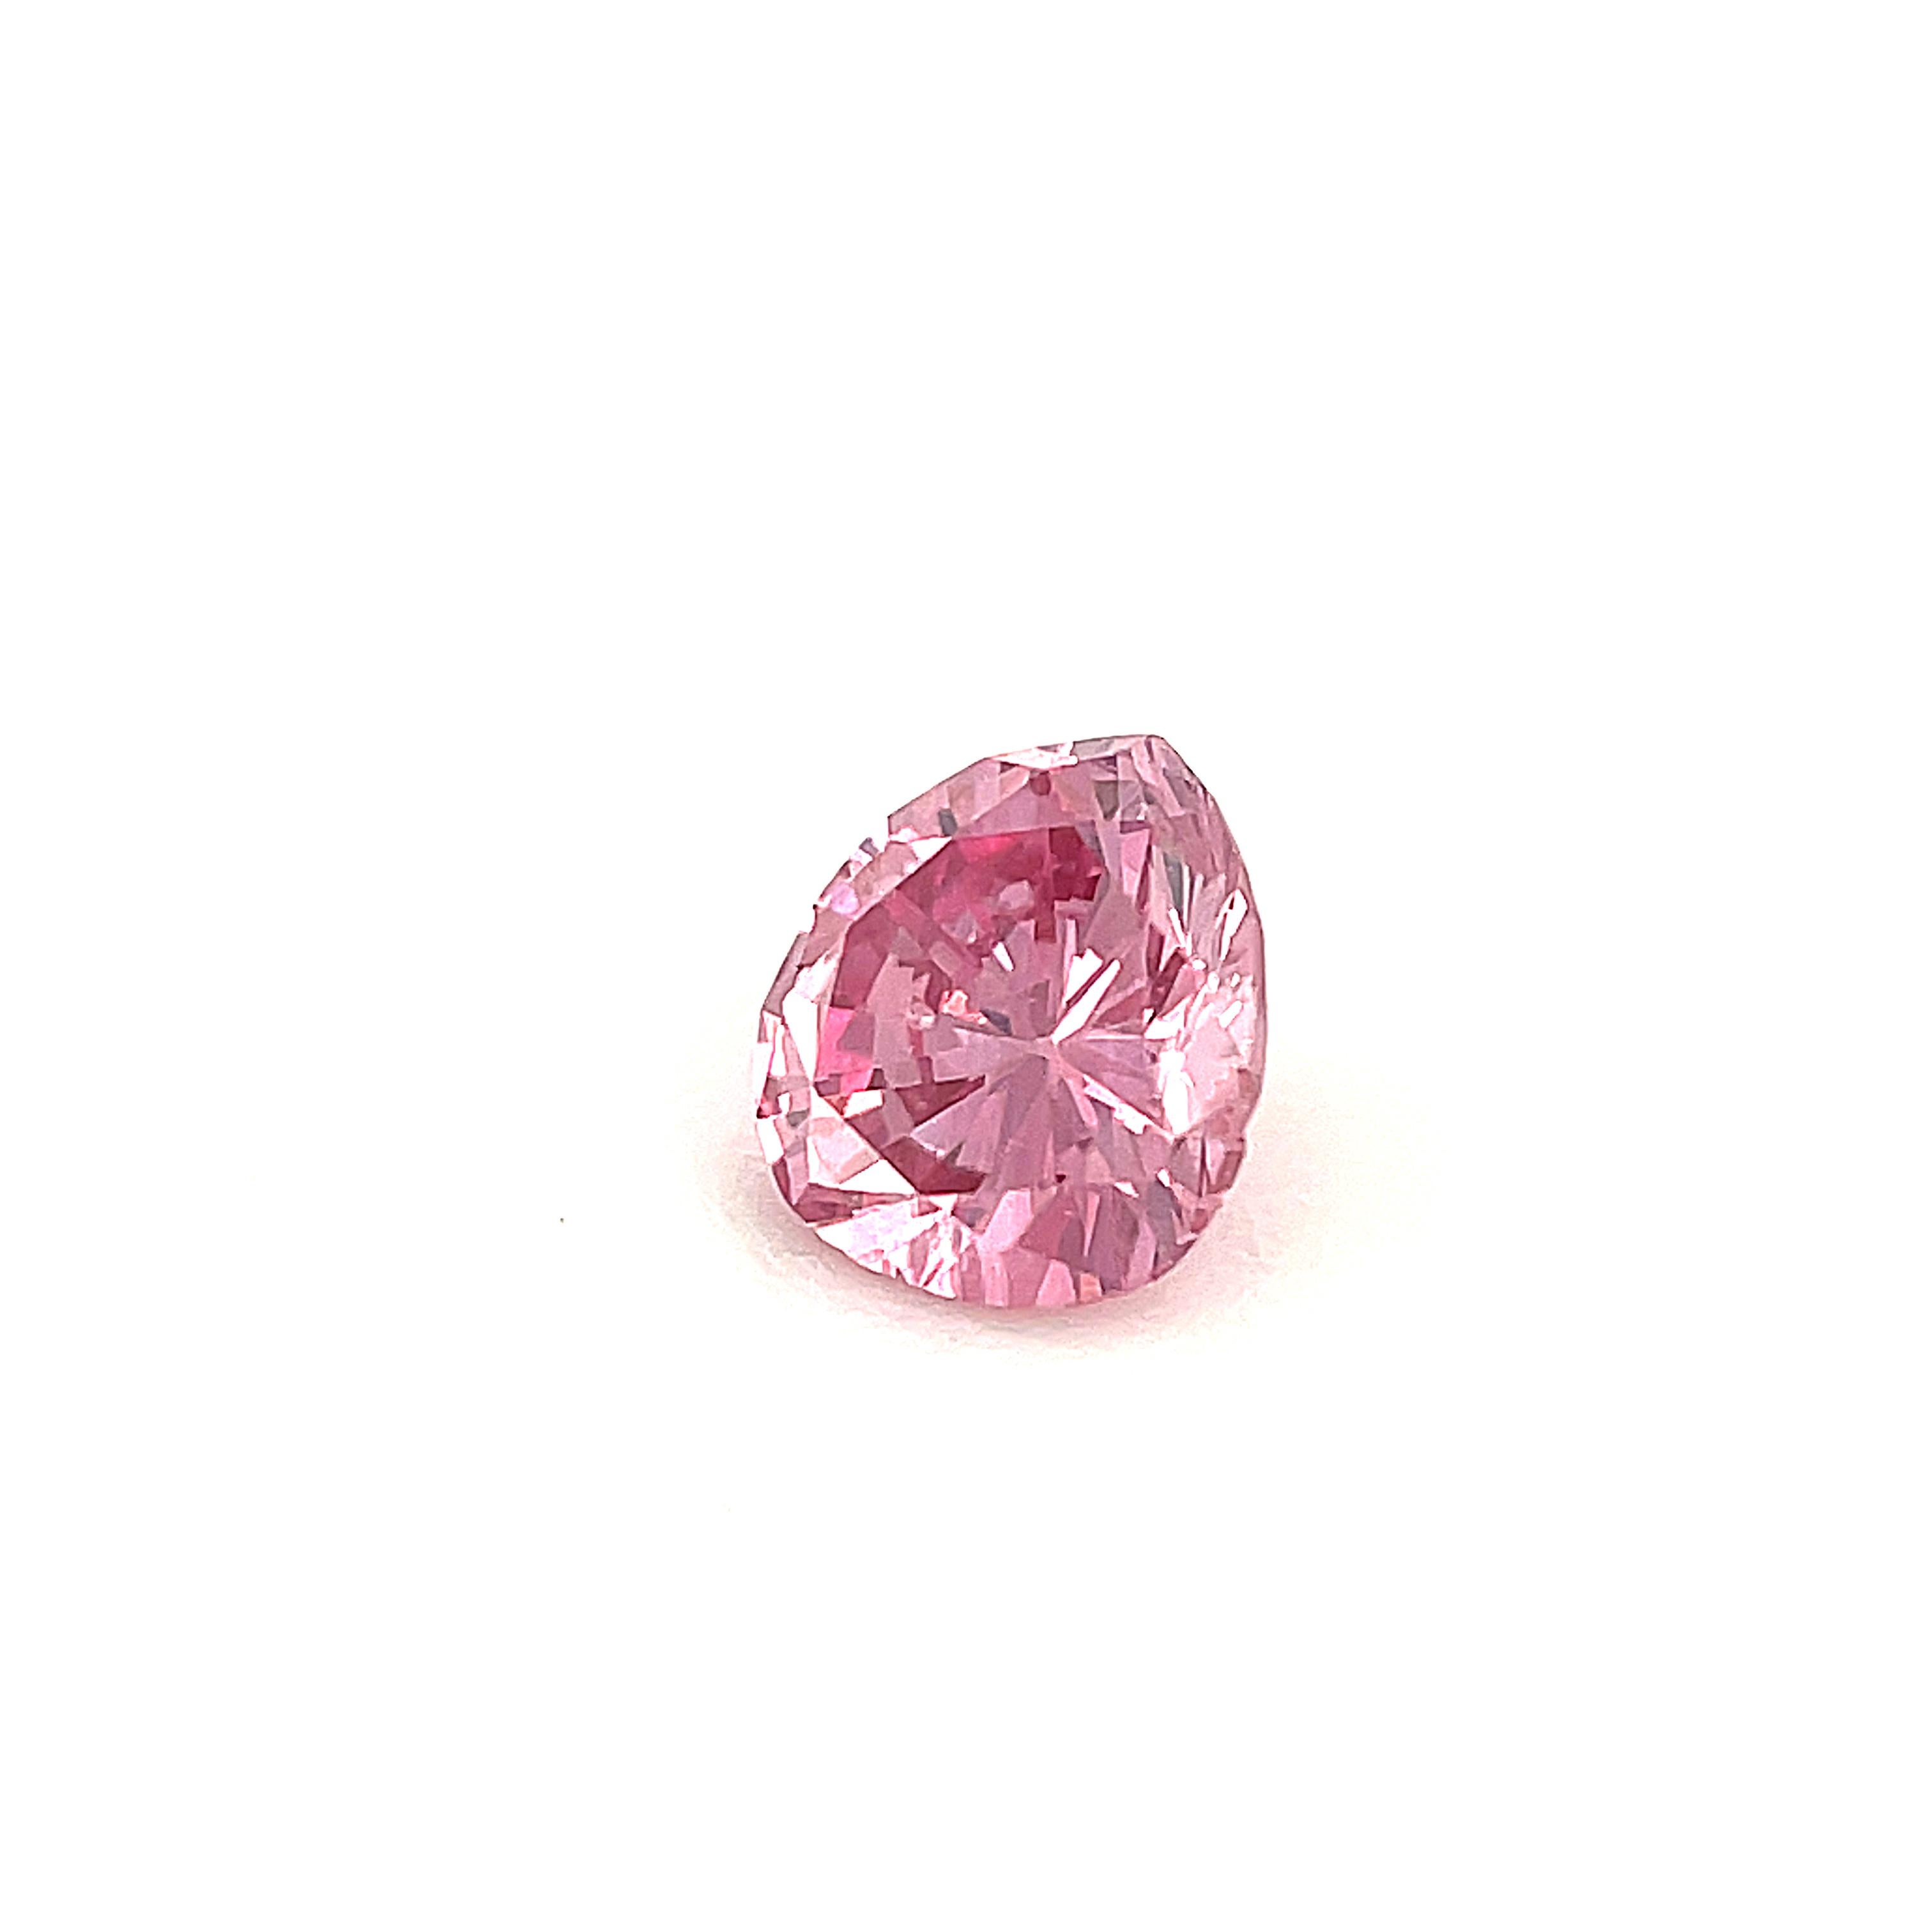 24 carat pink diamond price